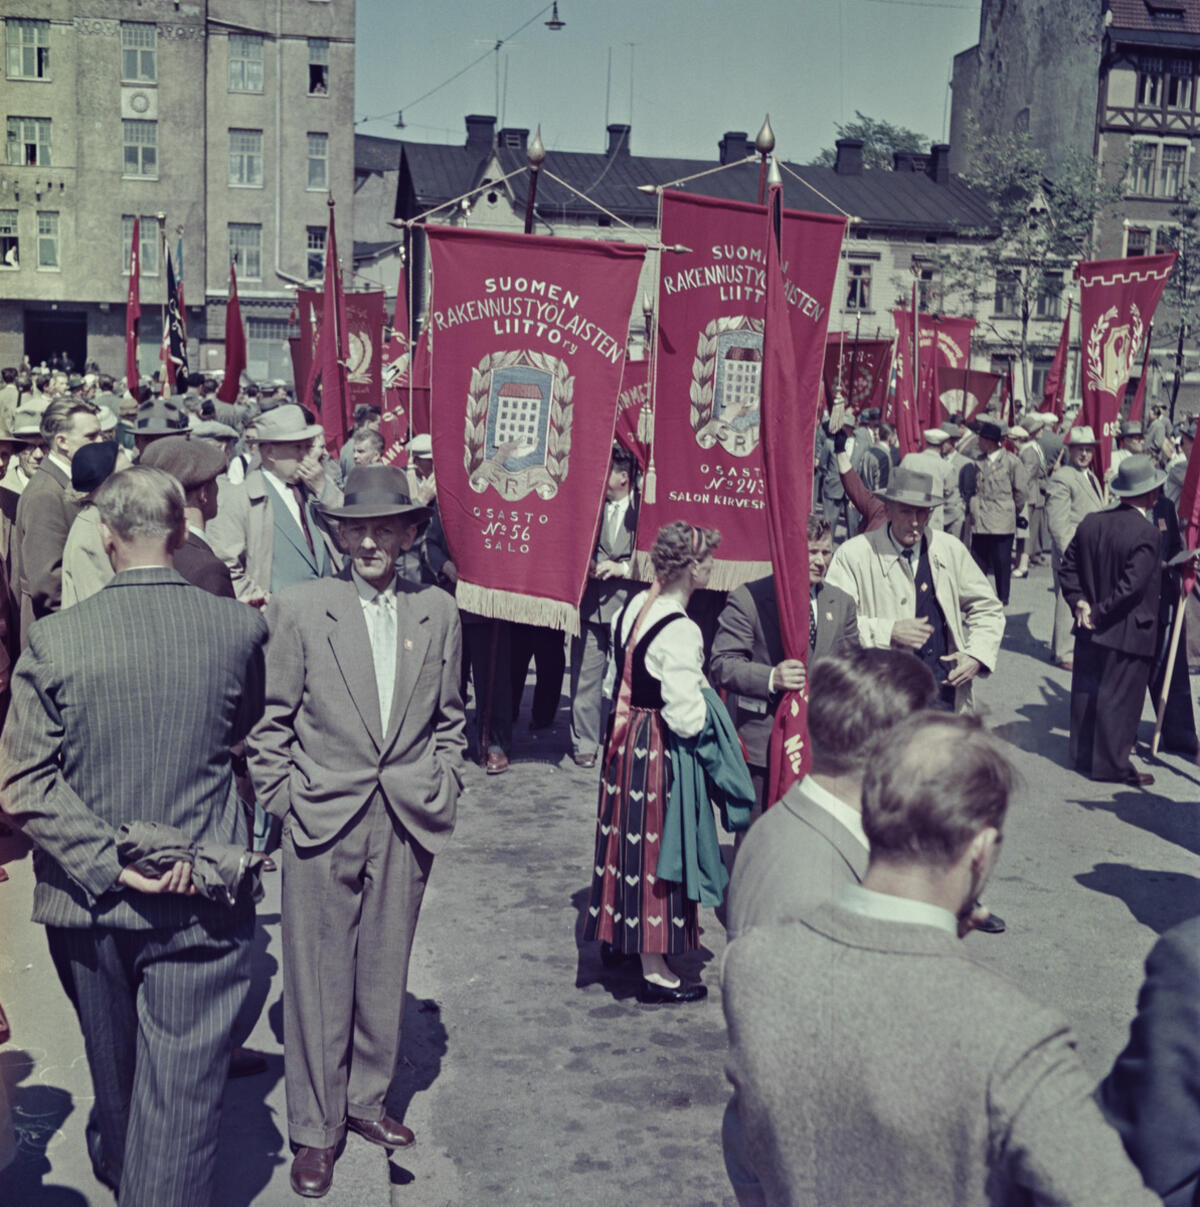 Ihmisiä kokoontuneena Hakaniemen torille. Keskellä kuvaa on kansallispukuun pukeutunut nainen ja punaisia banderolleja, joissa teksti Suomen rakennustyöläisten liitto.